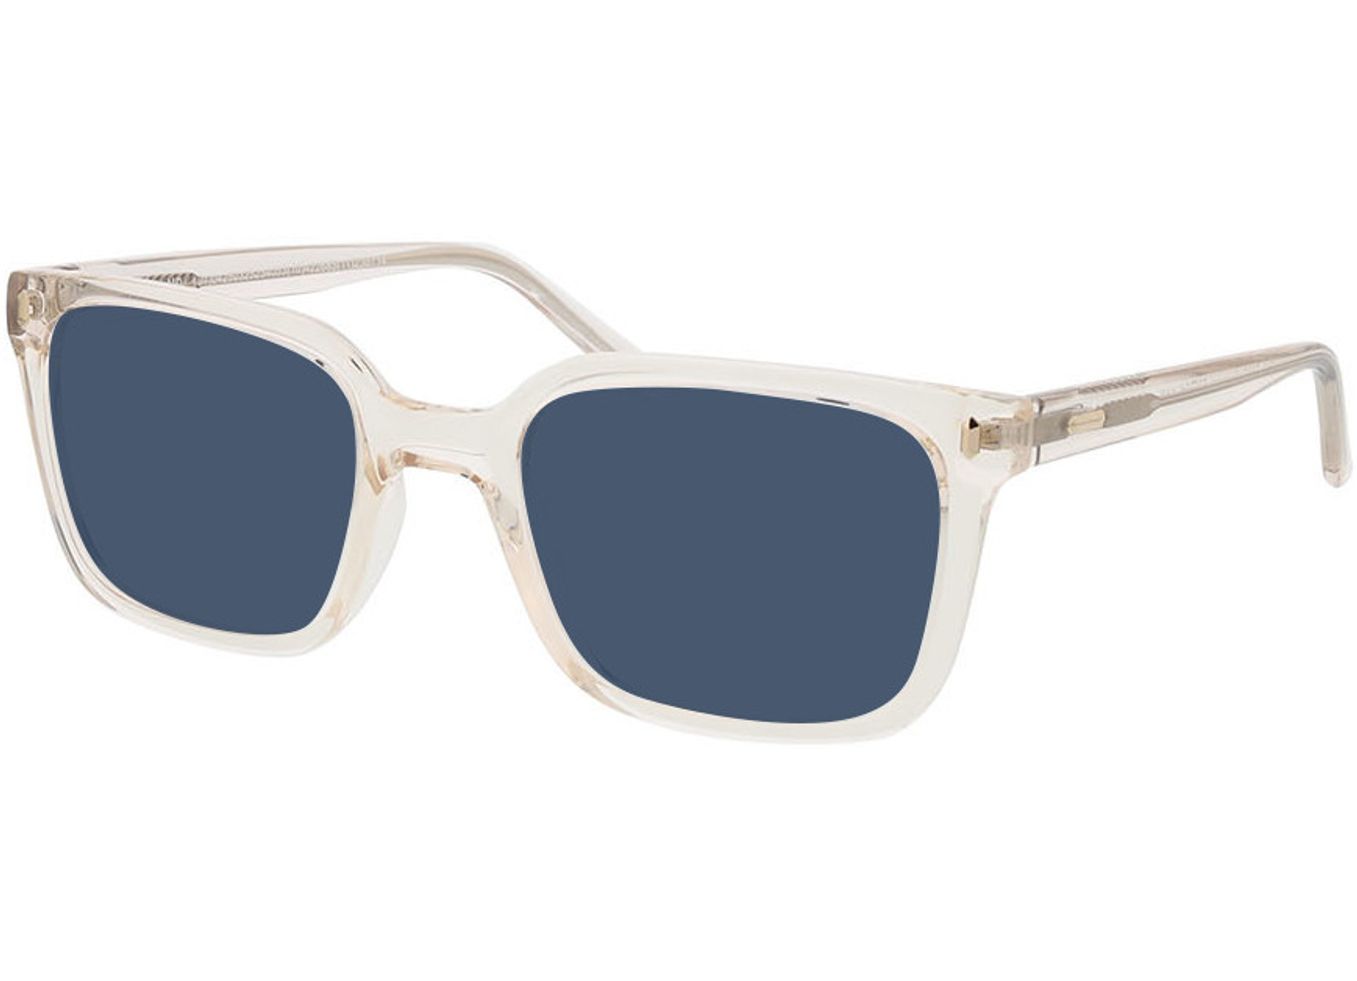 Arizona - beige Sonnenbrille ohne Sehstärke, Vollrand, Eckig von Brille24 Collection